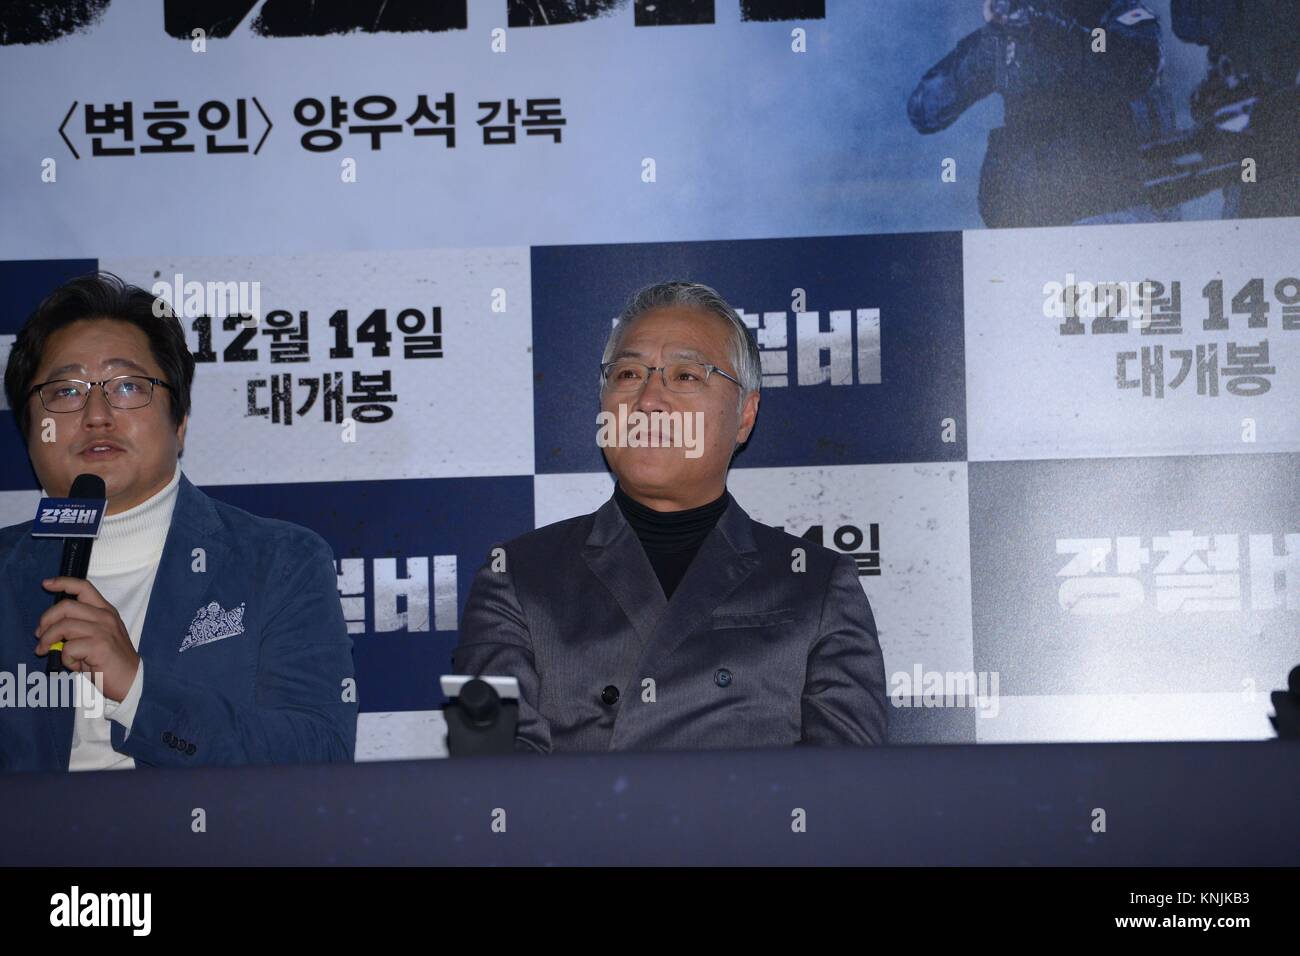 Seul in Corea. Undicesimo Dec, 2017. Jung Woo-sung, Kwak Do-ha vinto, Kim Eui-sung e Lee Kyeong Yeong frequentare la pressa premiere di " acciaio " pioggia a Seul, in Corea il 11 dicembre, 2017.(Cina e Corea diritti) Credito: TopPhoto/Alamy Live News Foto Stock